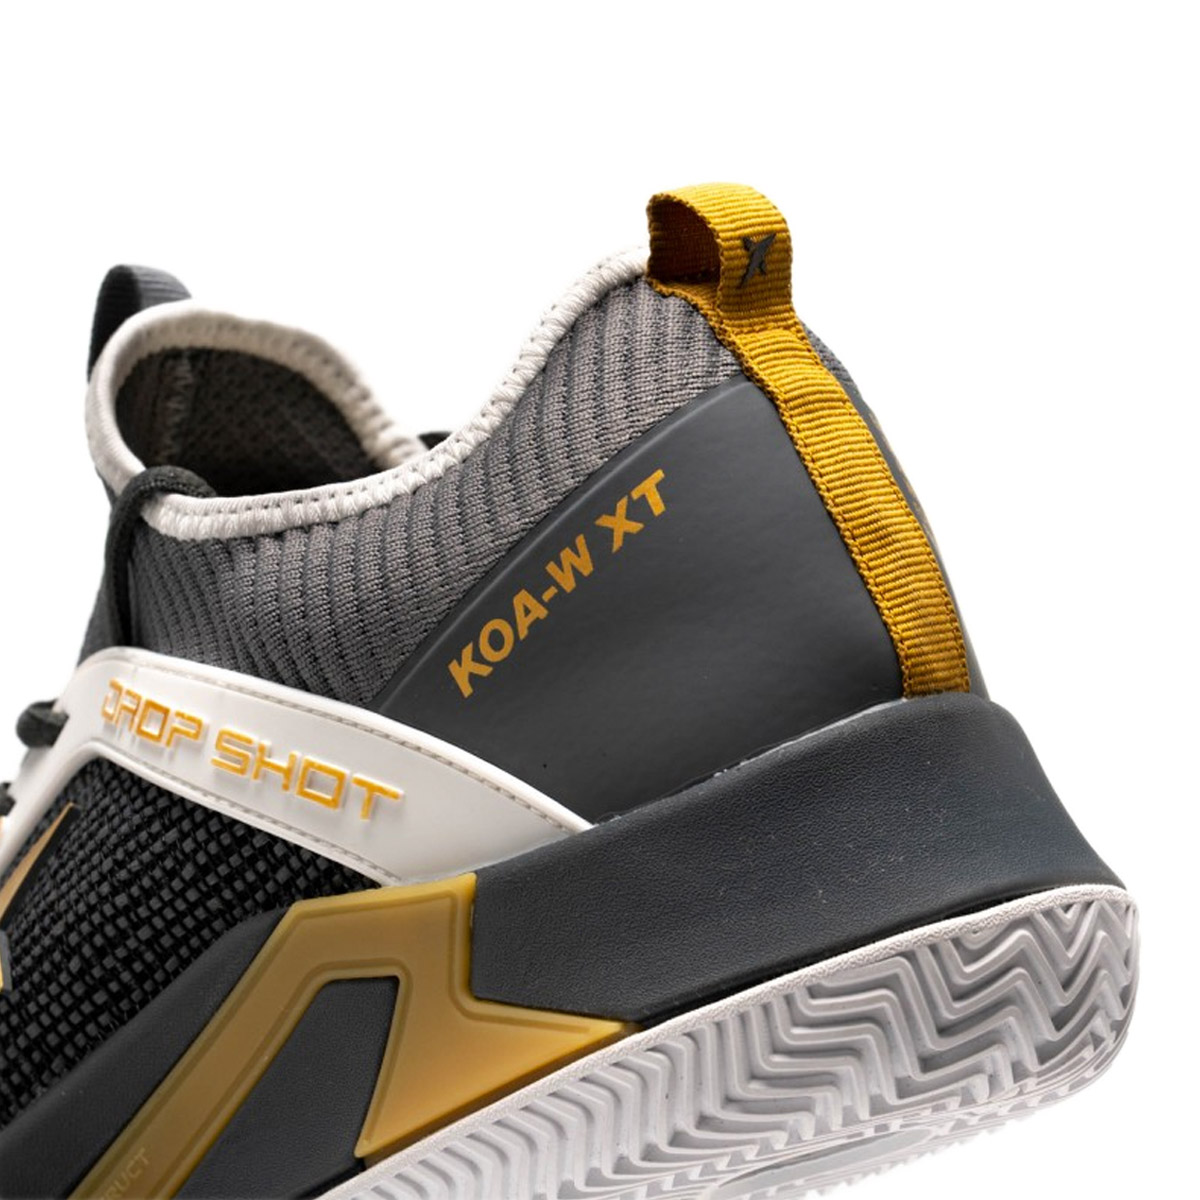 Drop Shot Koa W Xt Jmd Dz261001 - Sapatos de remo avançados com sola aderente, respirabilidade e design elegante. | Sport Zone MKP